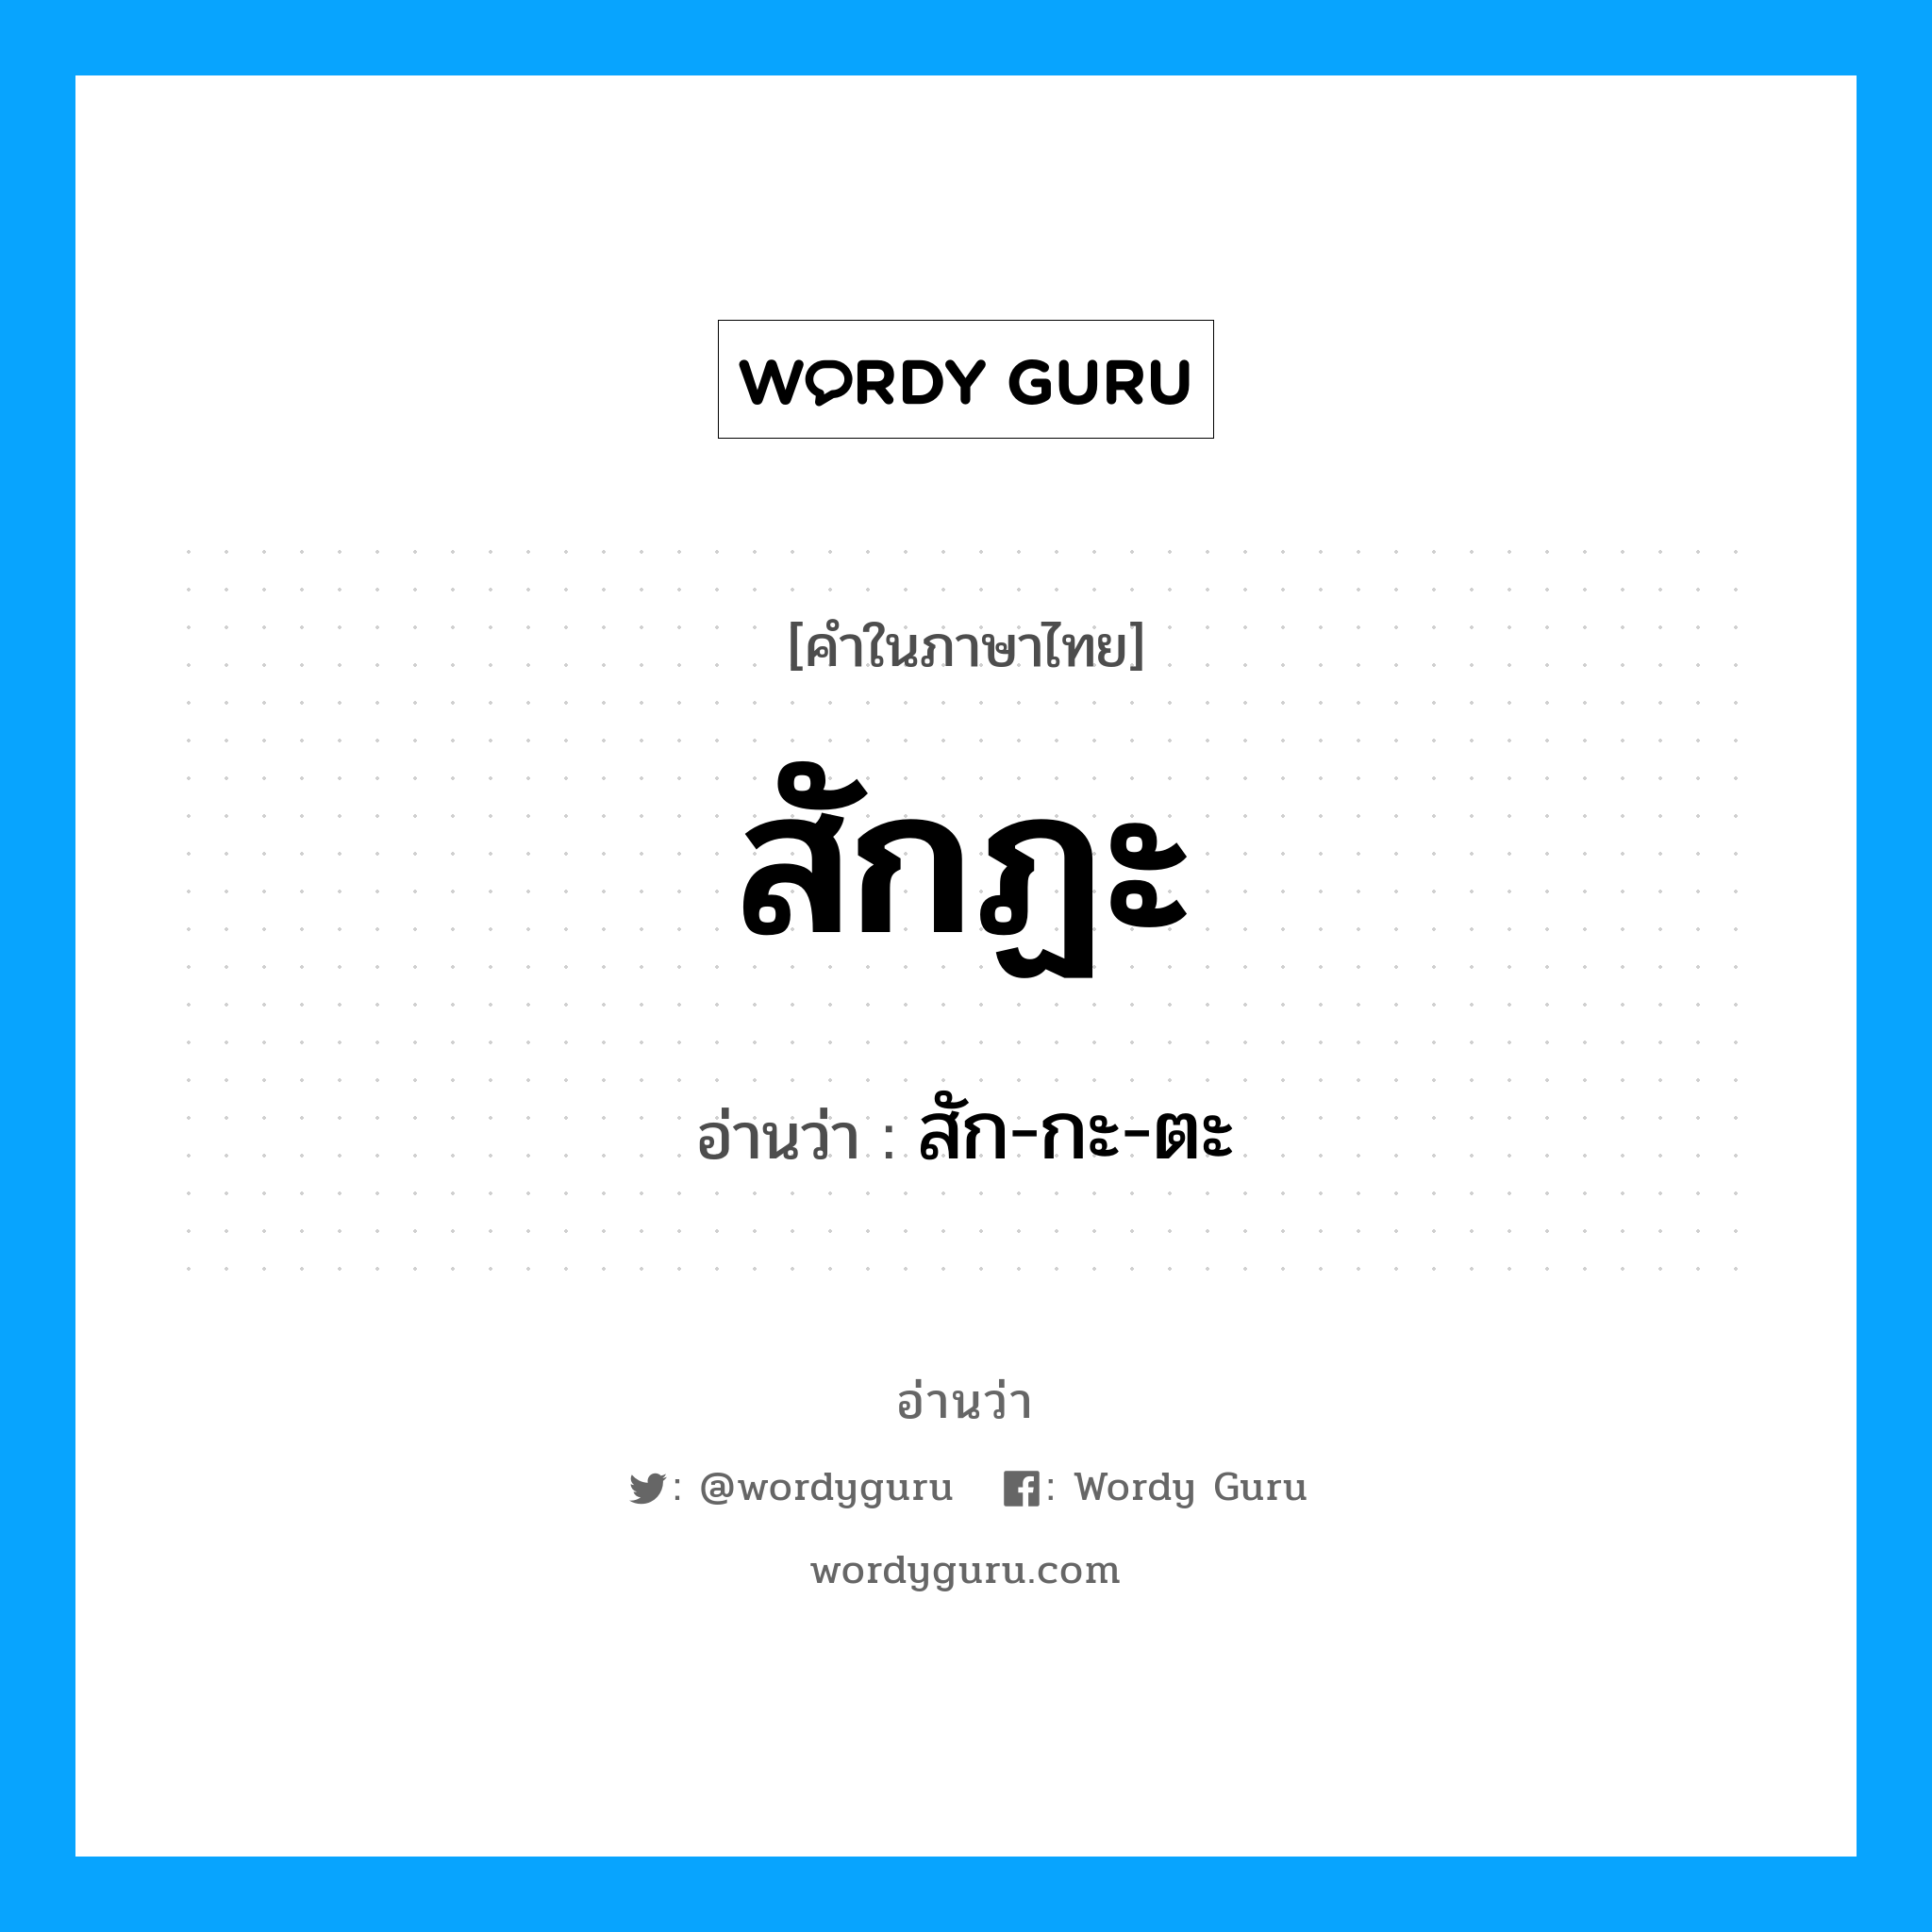 สัก-กะ-ตะ เป็นคำอ่านของคำไหน?, คำในภาษาไทย สัก-กะ-ตะ อ่านว่า สักฏะ